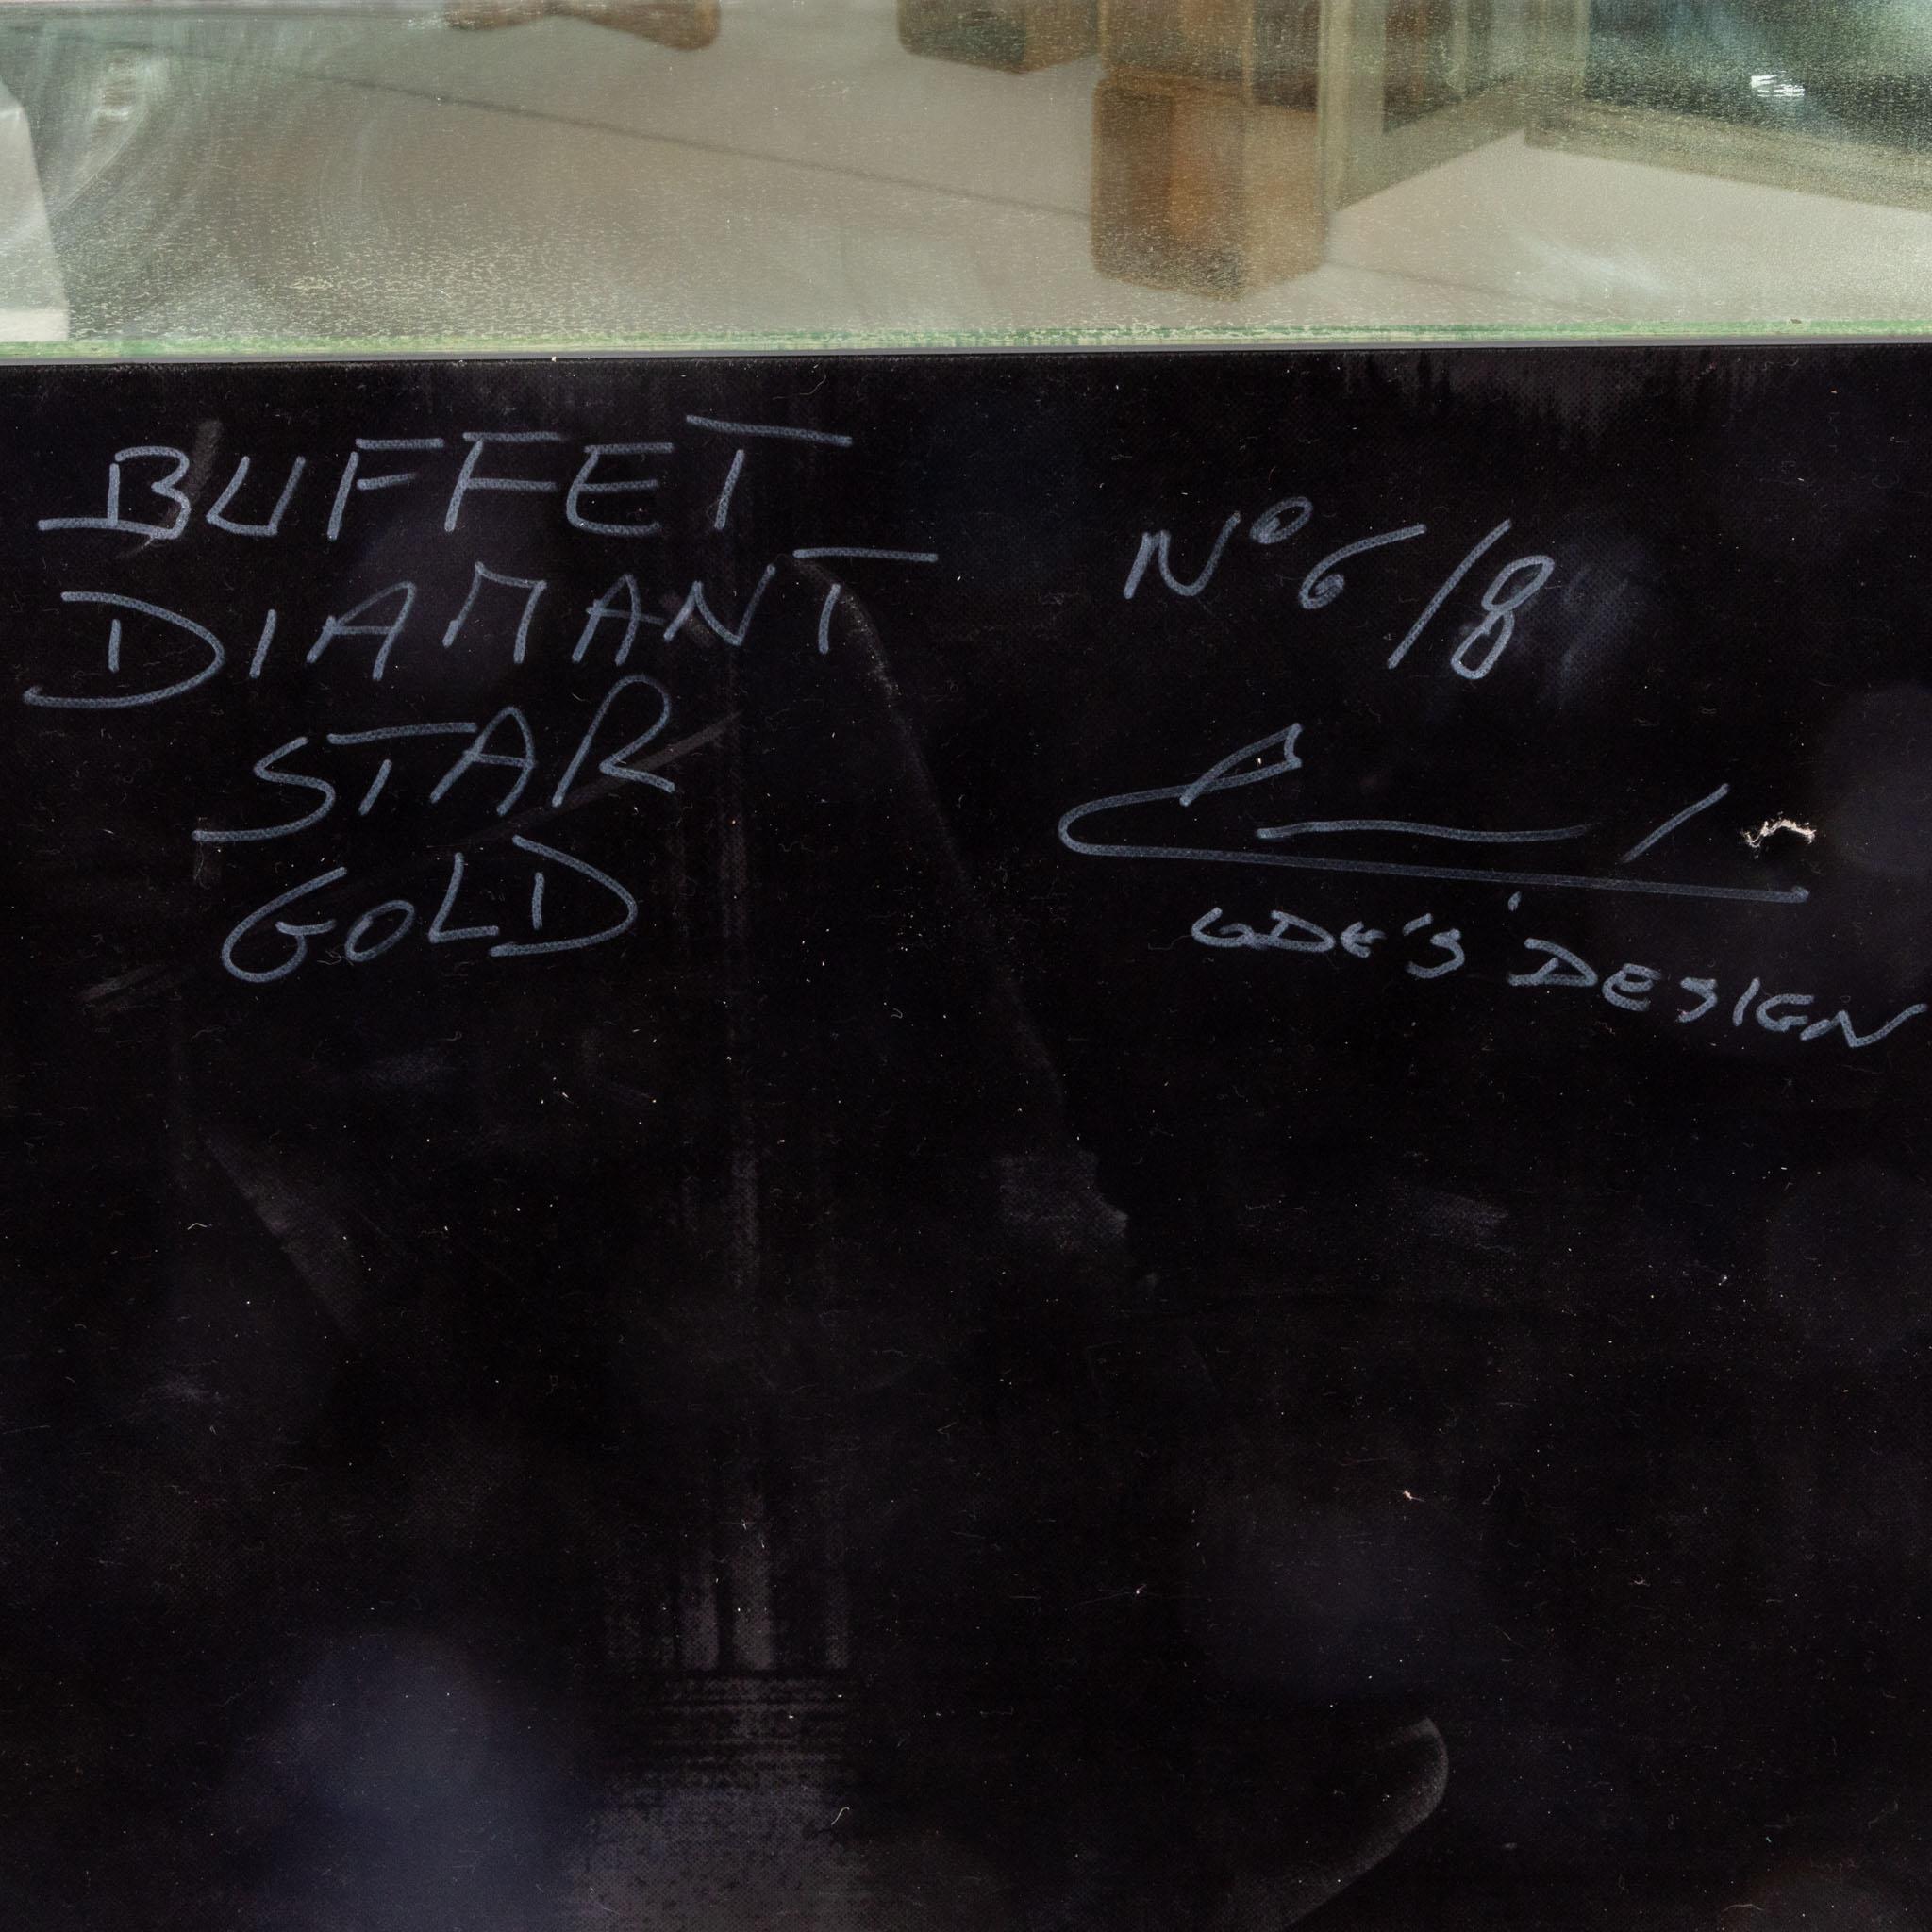 Olivier De Schrijver '*1958', Buffet Diamond Star Gold, No. 6/8, Ode's Design 2